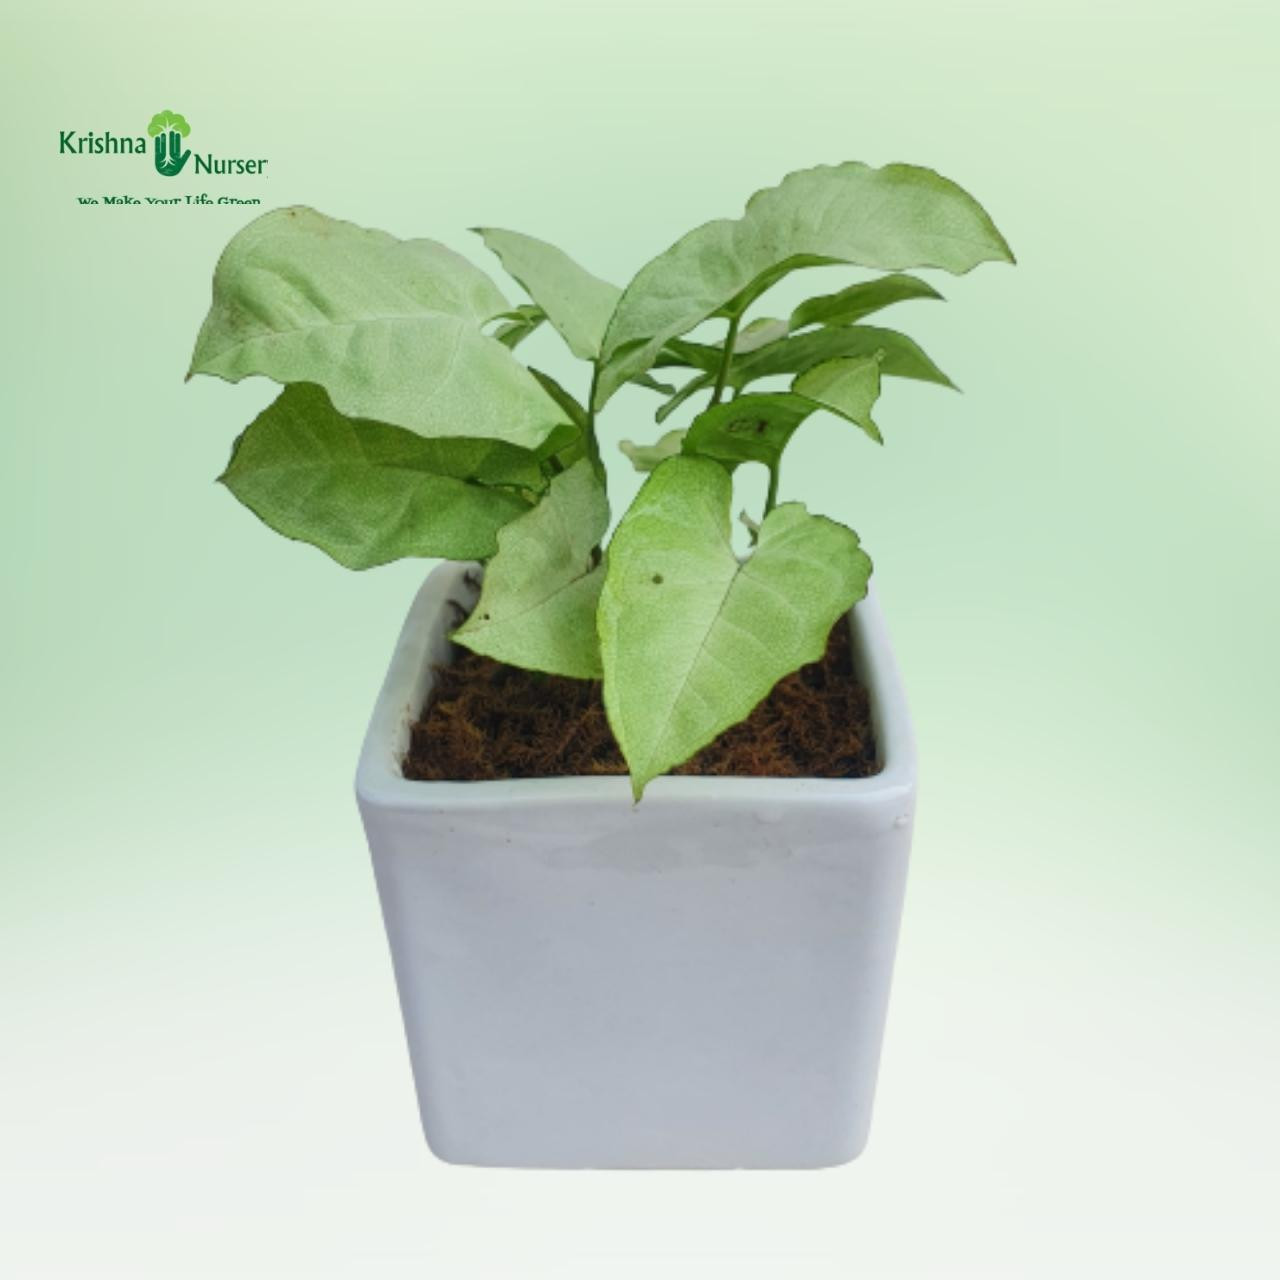 syngonium-podophyllum-plant-with-ceramic-pot